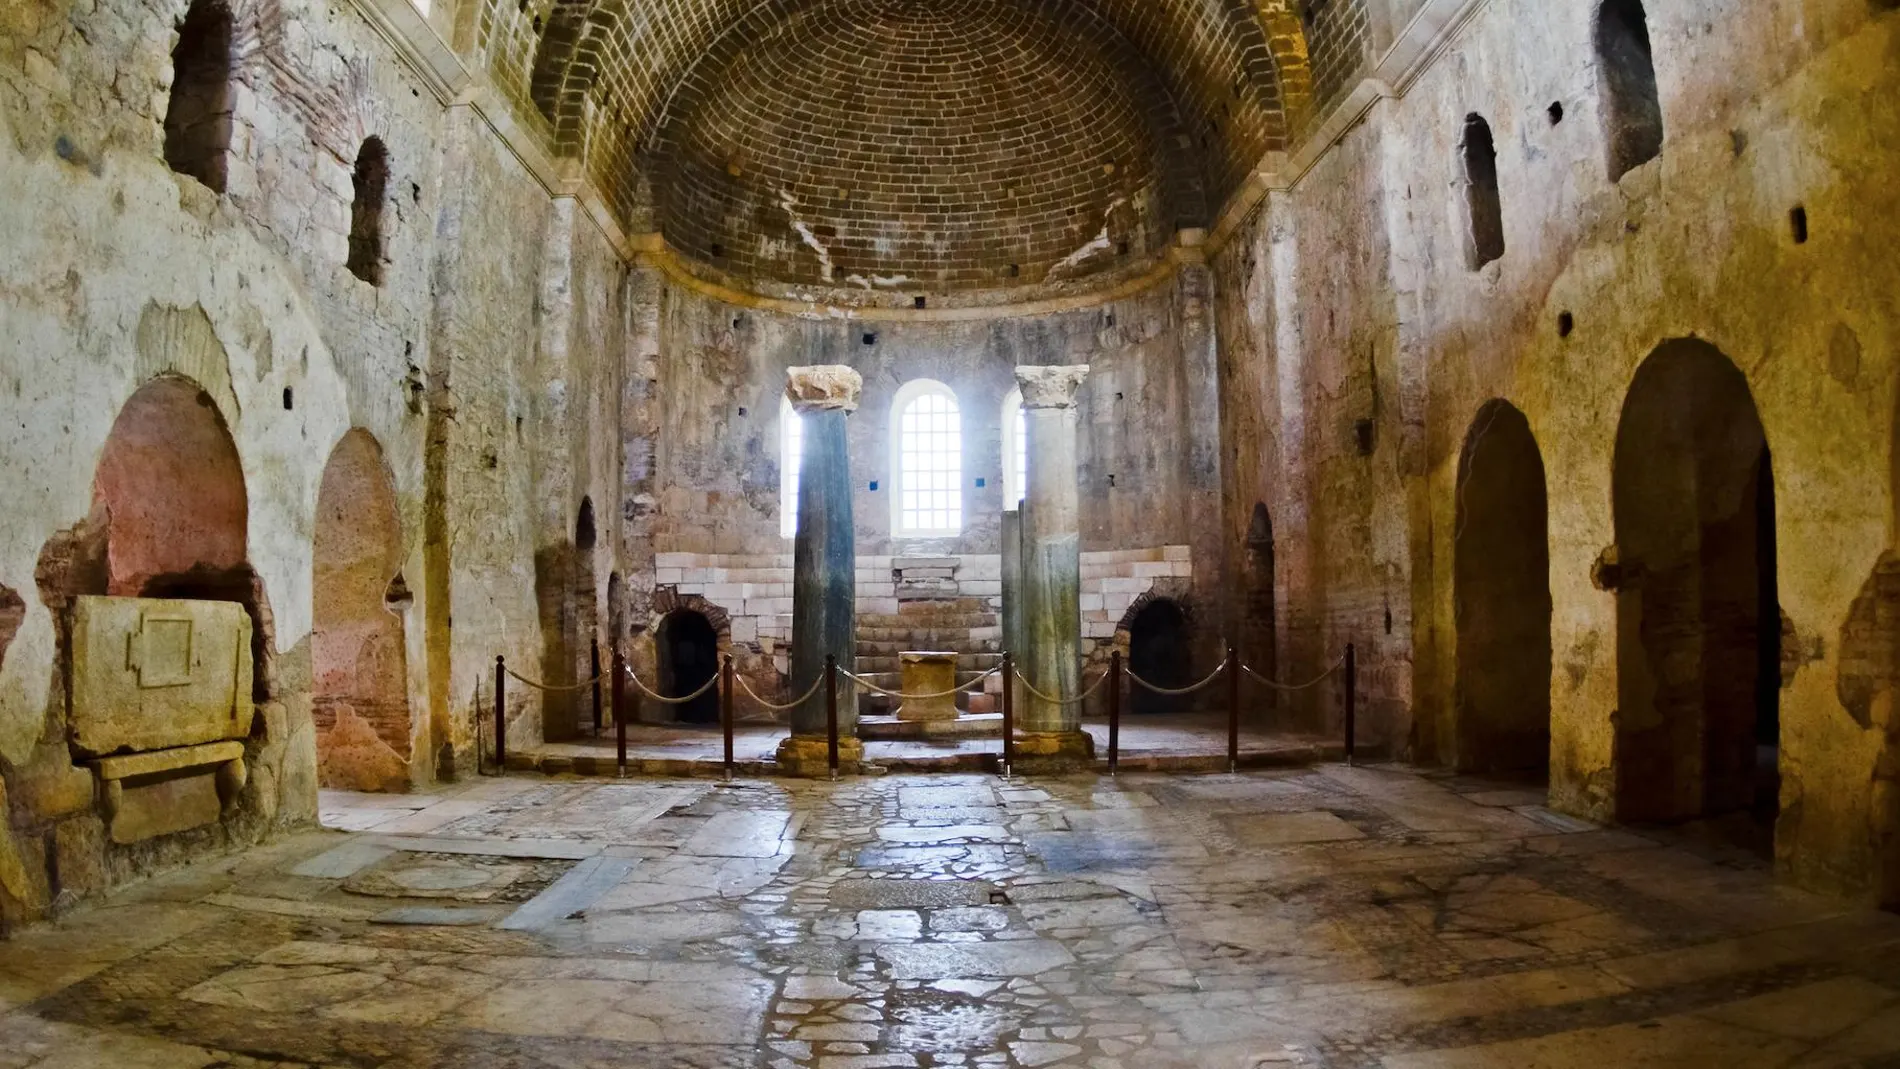 La iglesia de San Nicolás es uno de los monumentos más visitados de Turquía